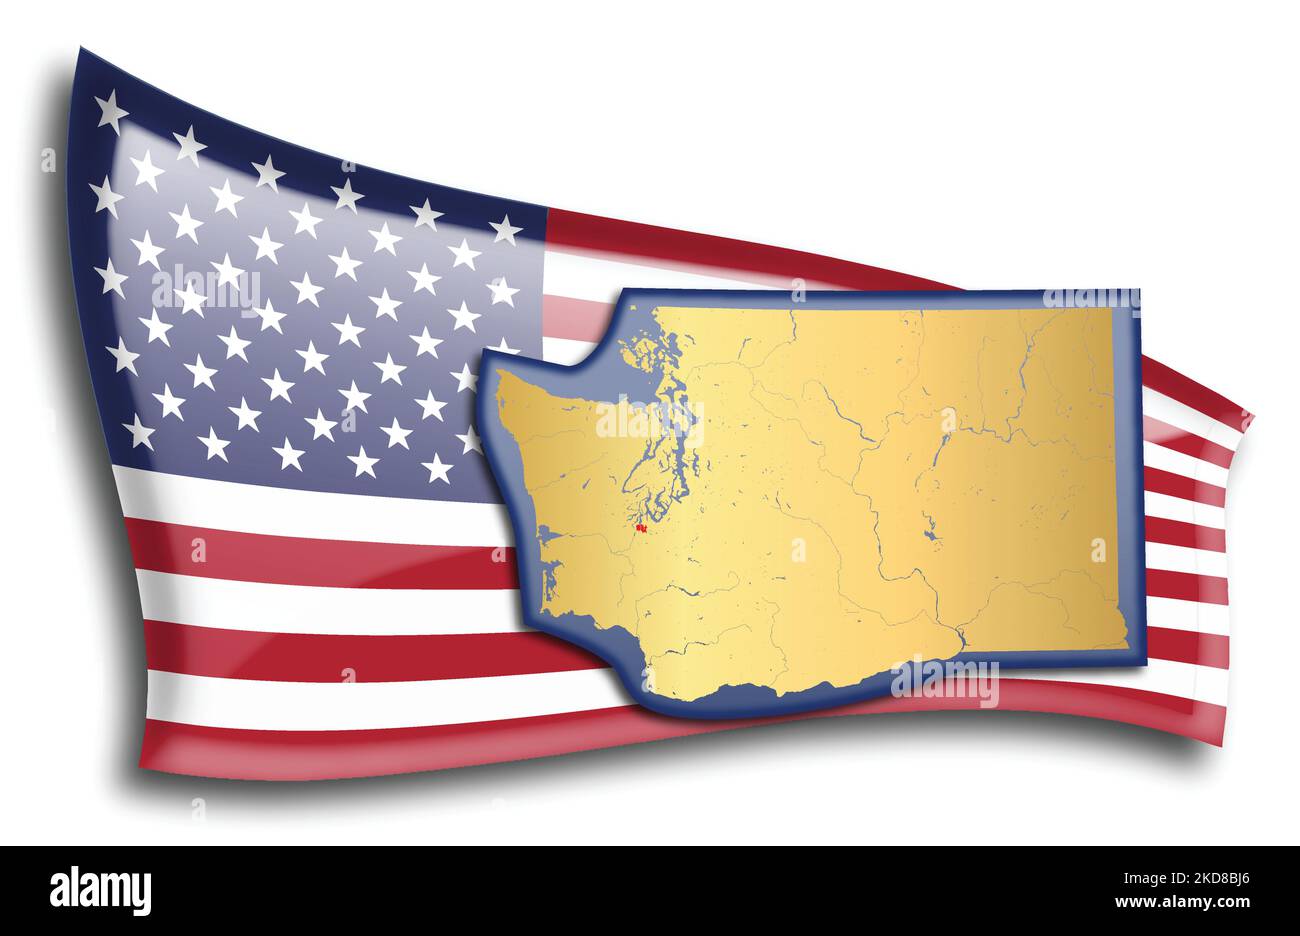 Etats-Unis - carte de Washington contre un drapeau américain. Les rivières et les lacs sont affichés sur la carte. American Flag et State Map peuvent être utilisés séparément Illustration de Vecteur